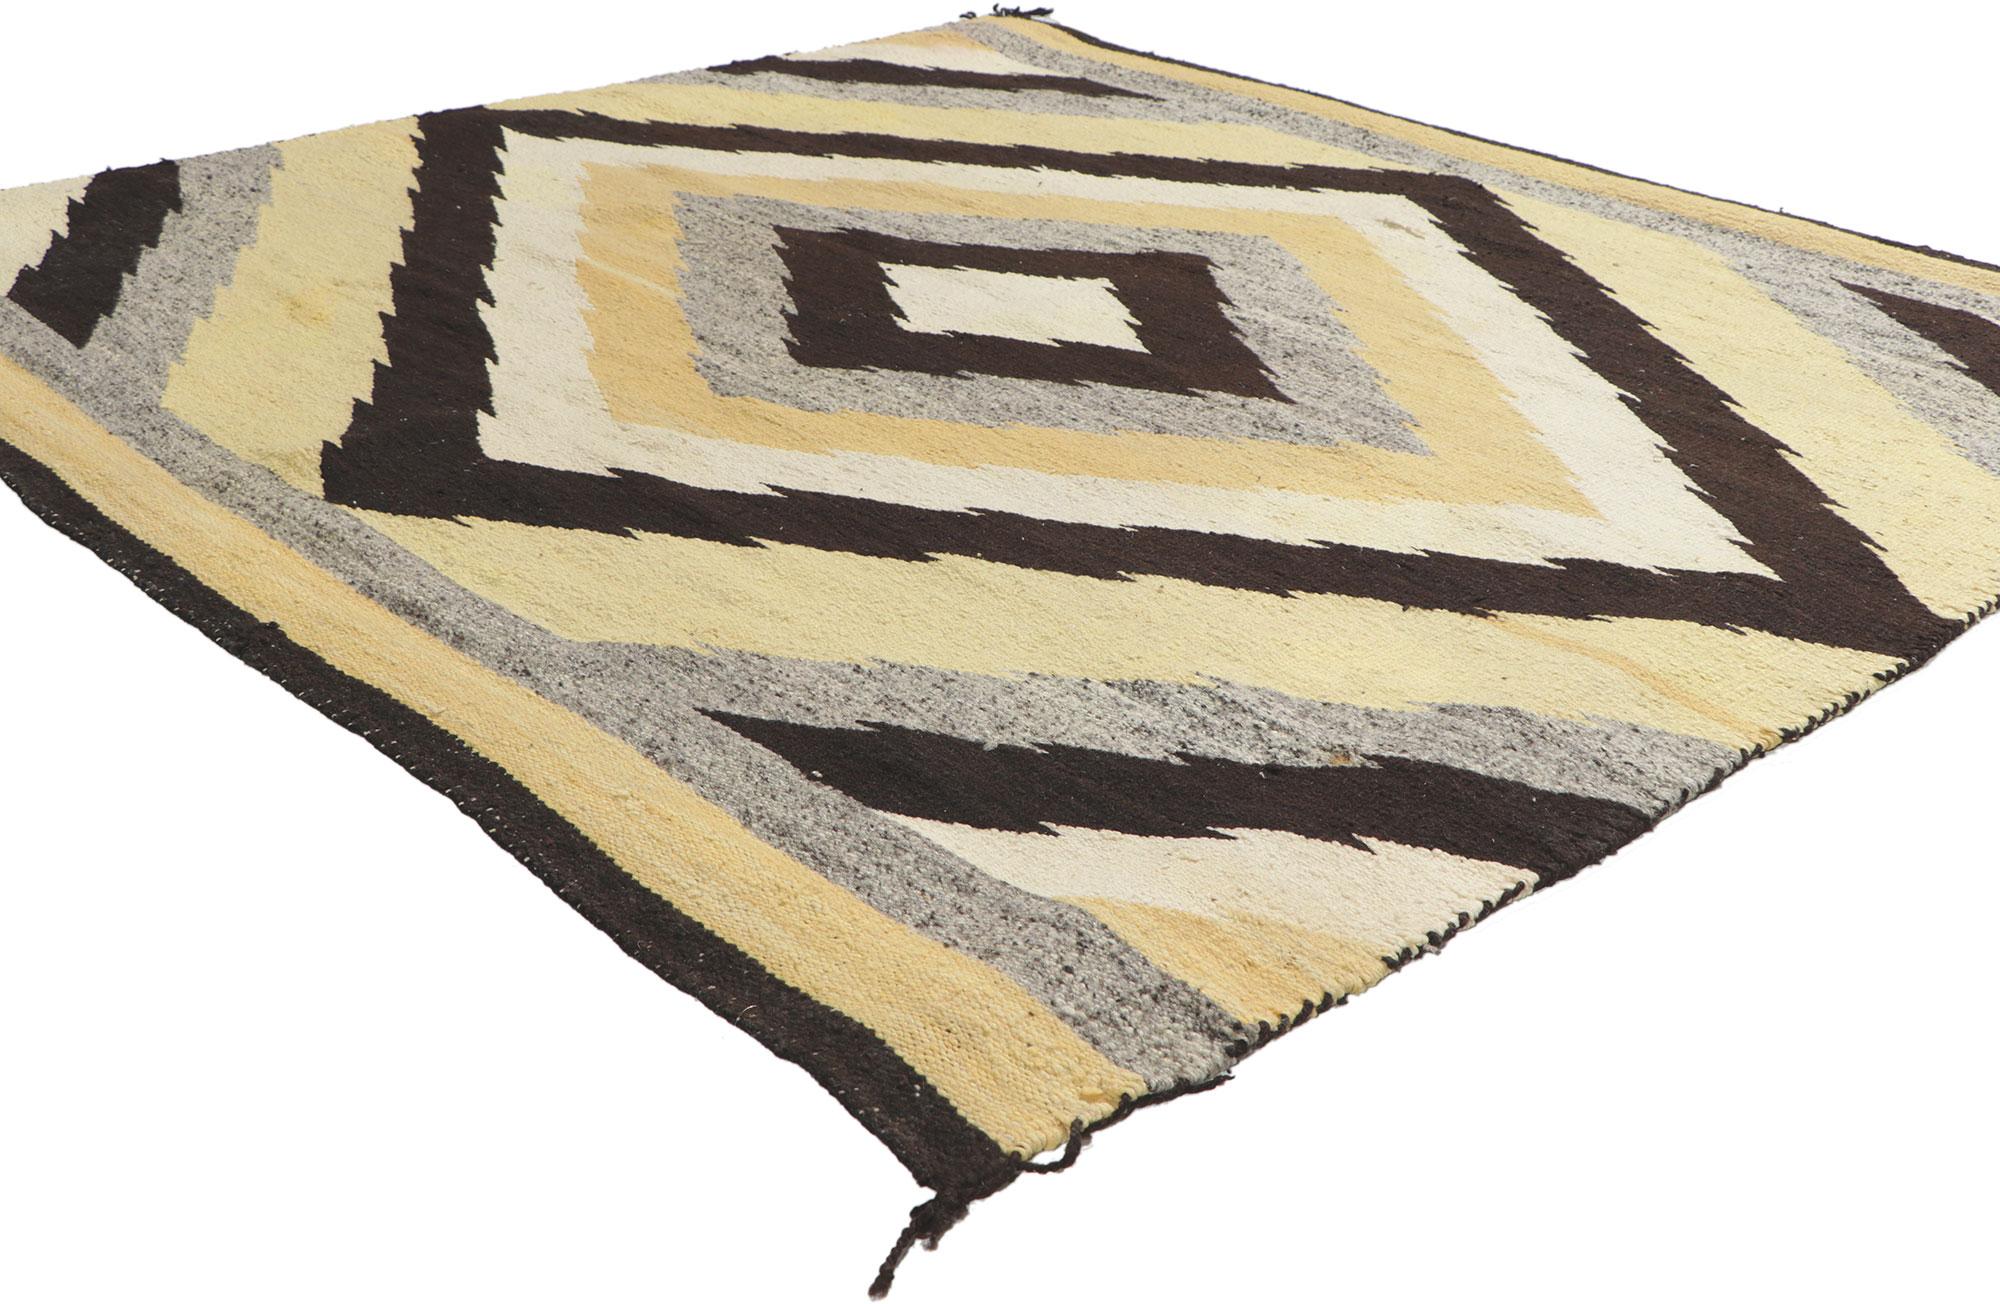 78503 Antiker Eye Dazzler Navajo-Teppich, 04'08 x 04'11. Dieser handgewebte Navajo-Teppich im Two Grey Hills-Stil besticht durch seine unglaubliche Detailtreue und Textur und ist eine faszinierende Vision gewebter Schönheit. Das auffällige Eye